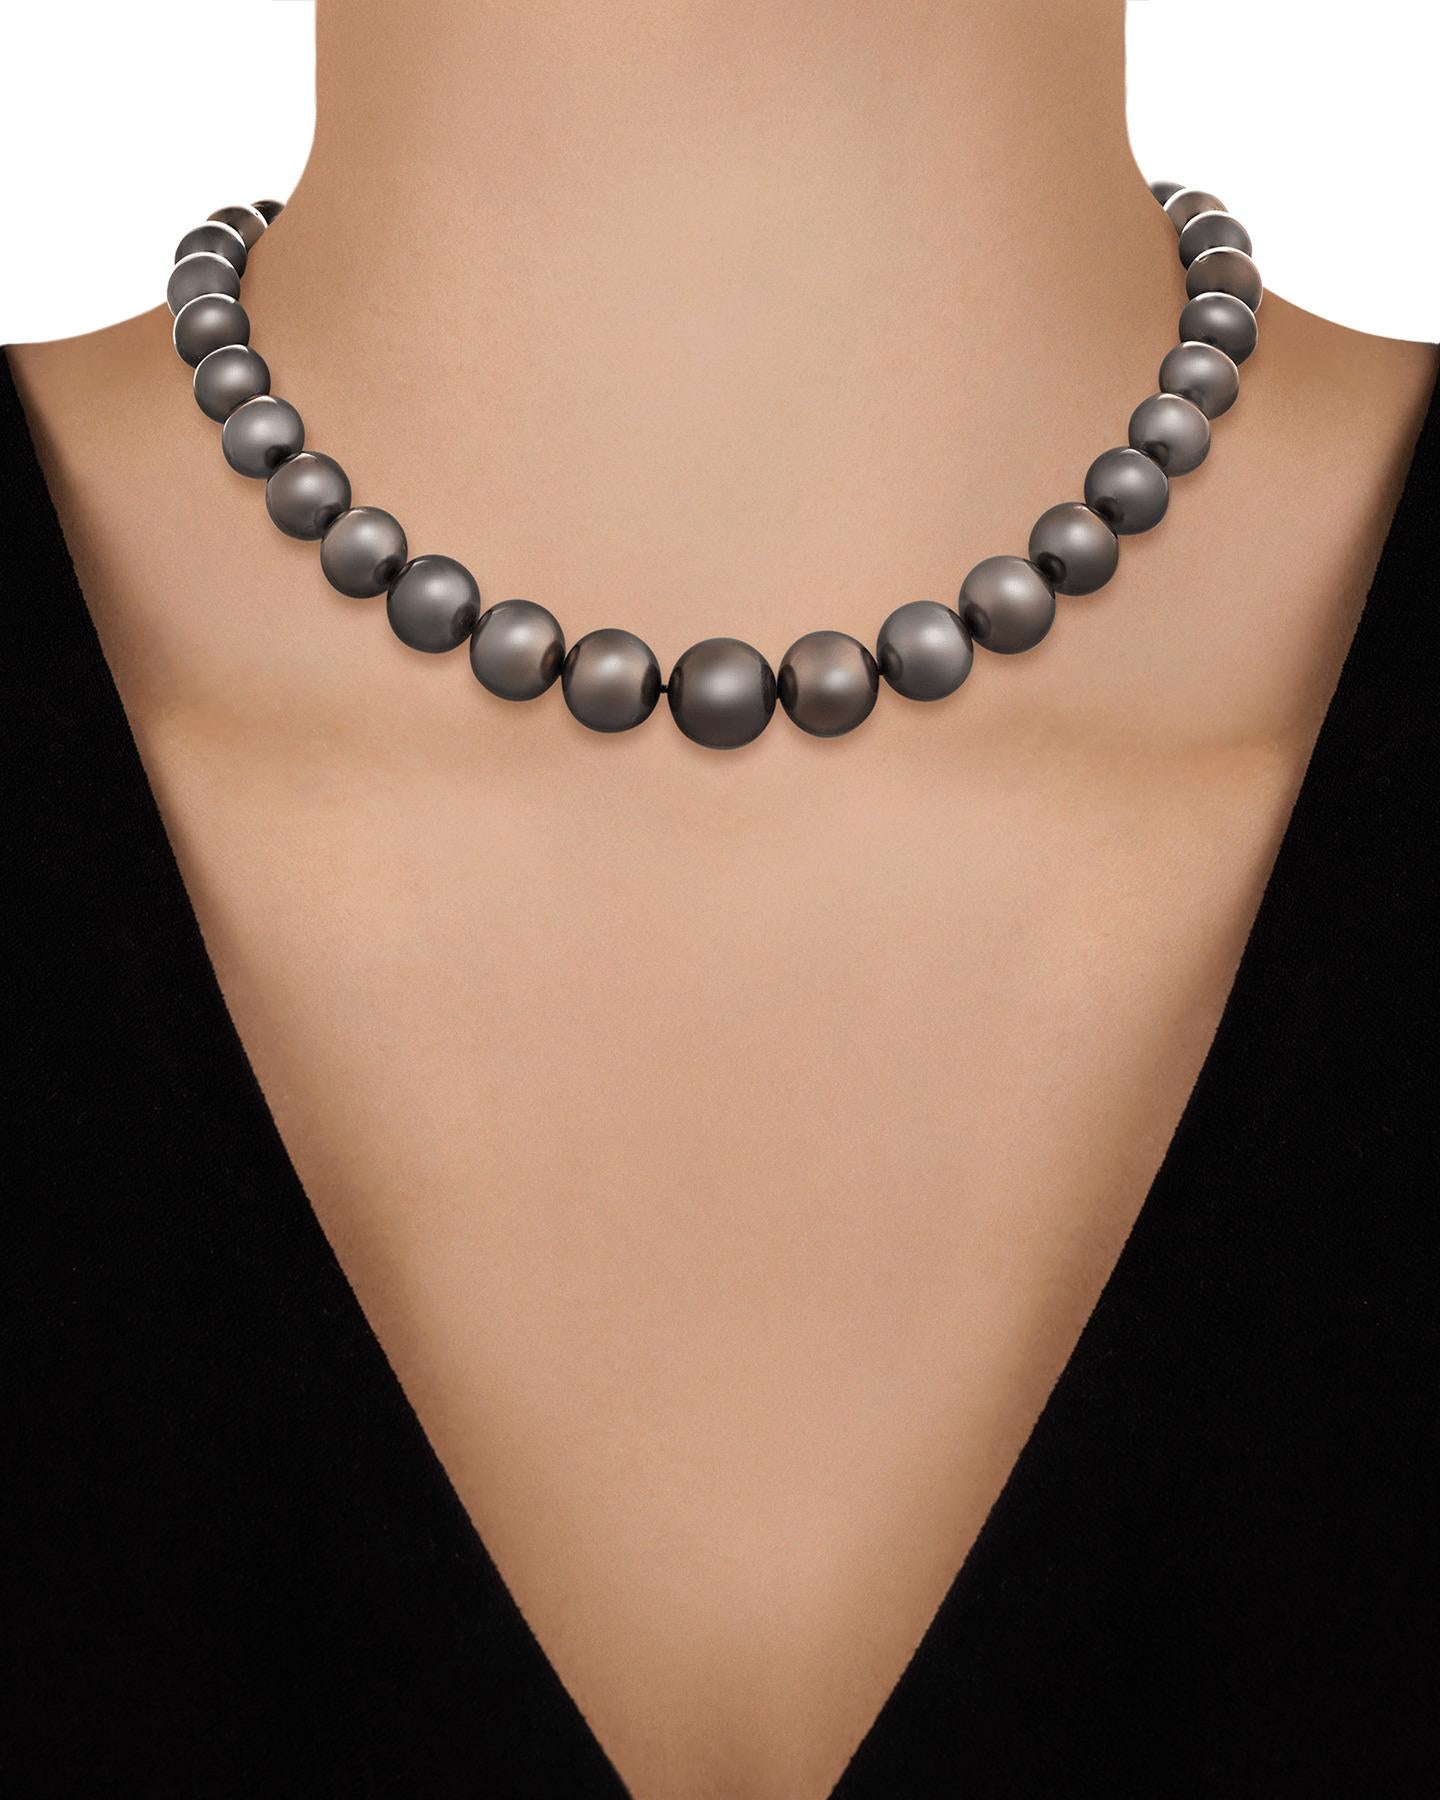 Les trente-sept perles de Tahiti de ce collier, d'une couleur argentée lustrée, ont une taille comprise entre 13 et 15 mm. Prisées pour leur couleur lumineuse, les perles provenant des eaux du Pacifique Sud sont les plus convoitées au monde.